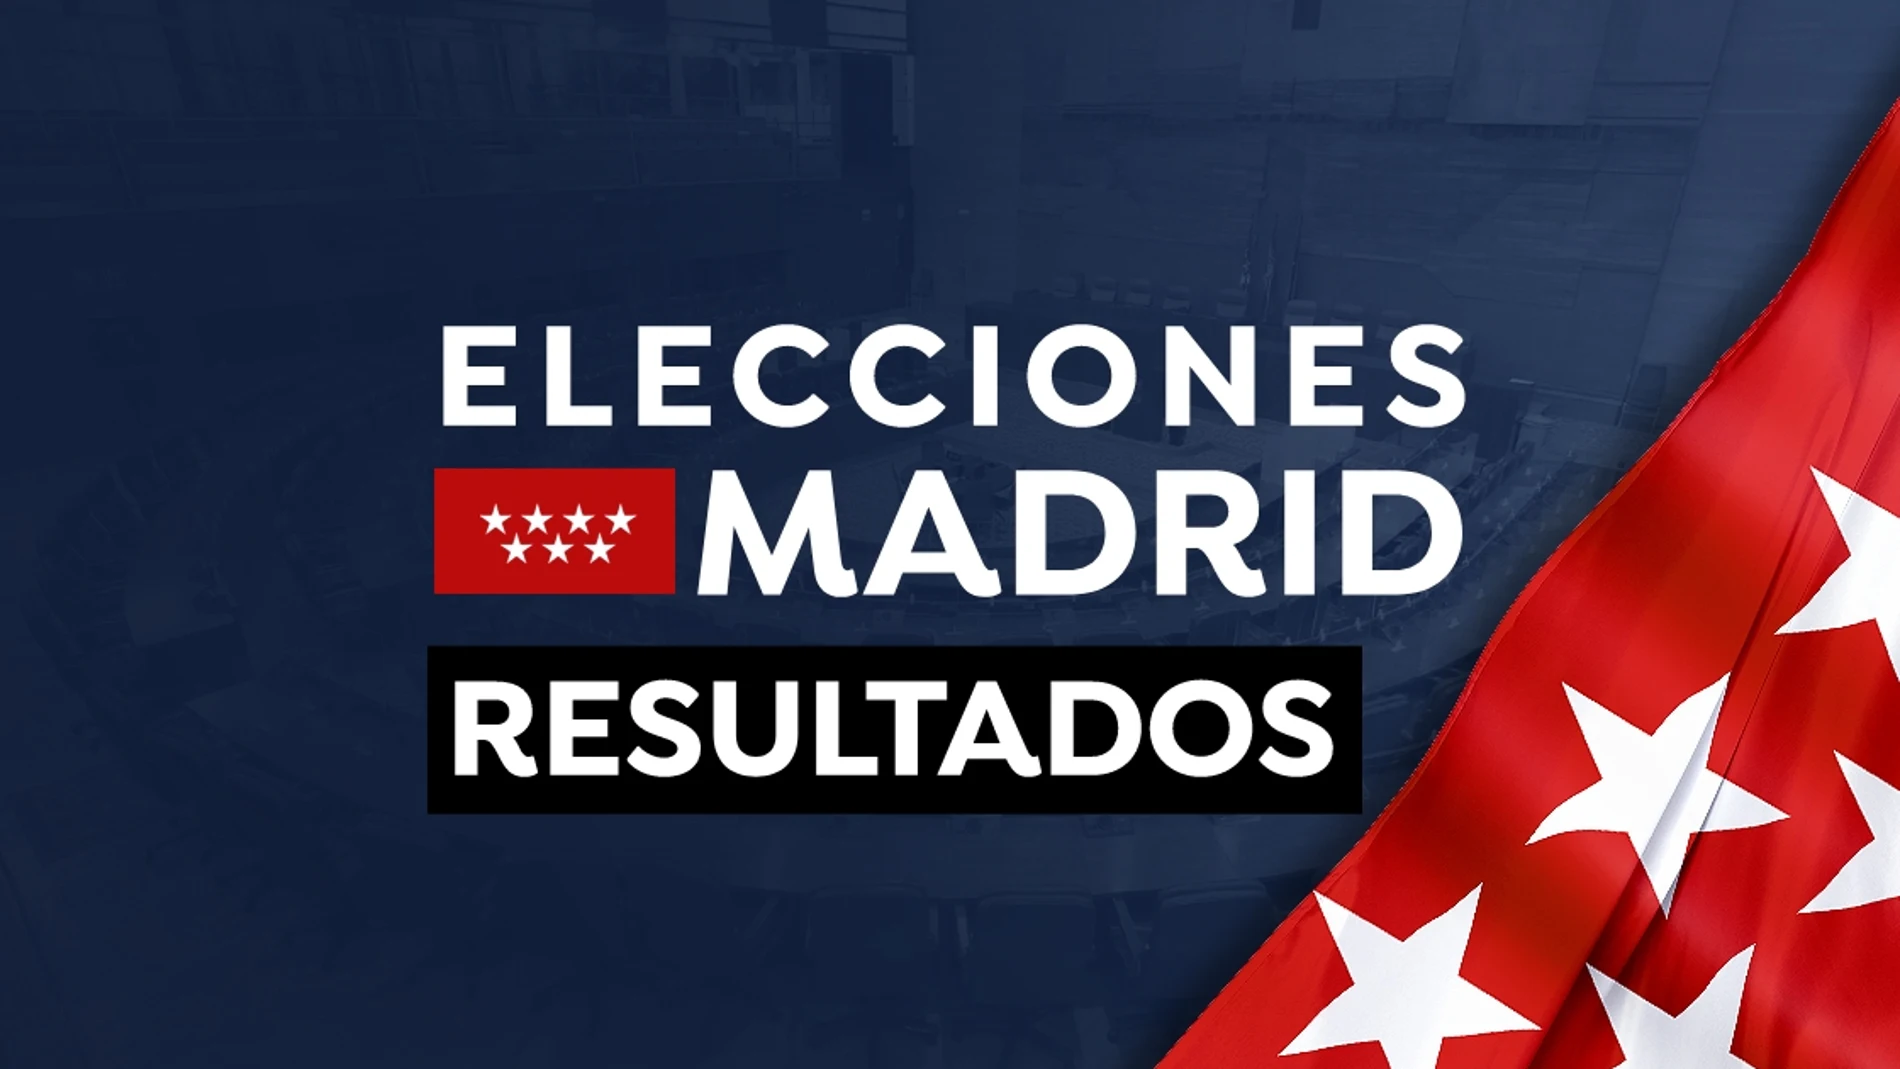 Elecciones Madrid 2021: Resultado y escrutinio del 4M en directo